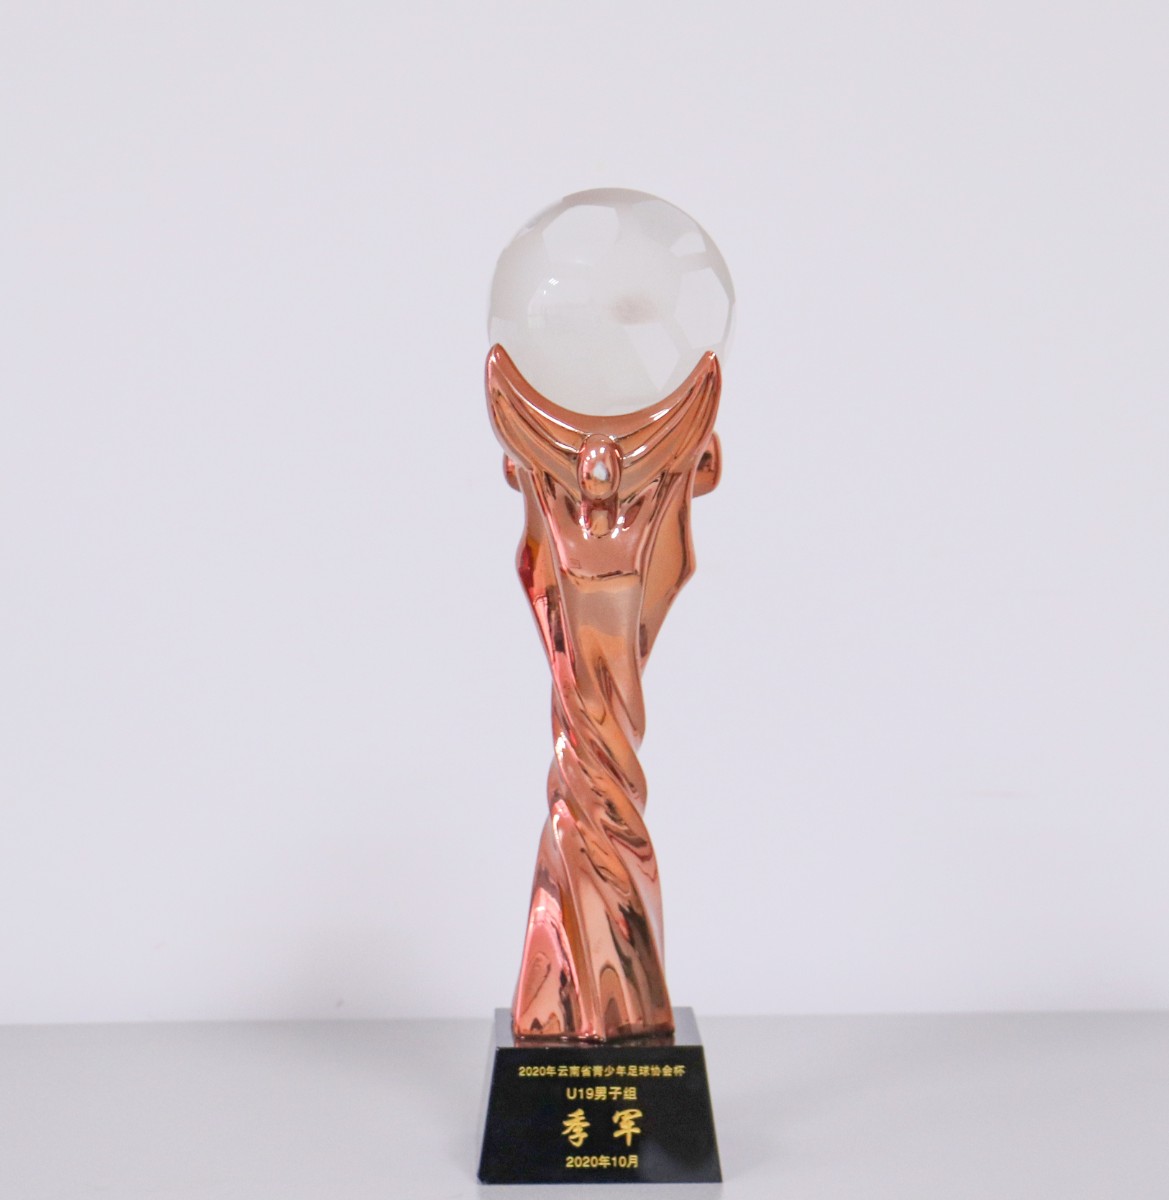 11-2020年云南省青少年足球协会杯U19男子组季军.jpg